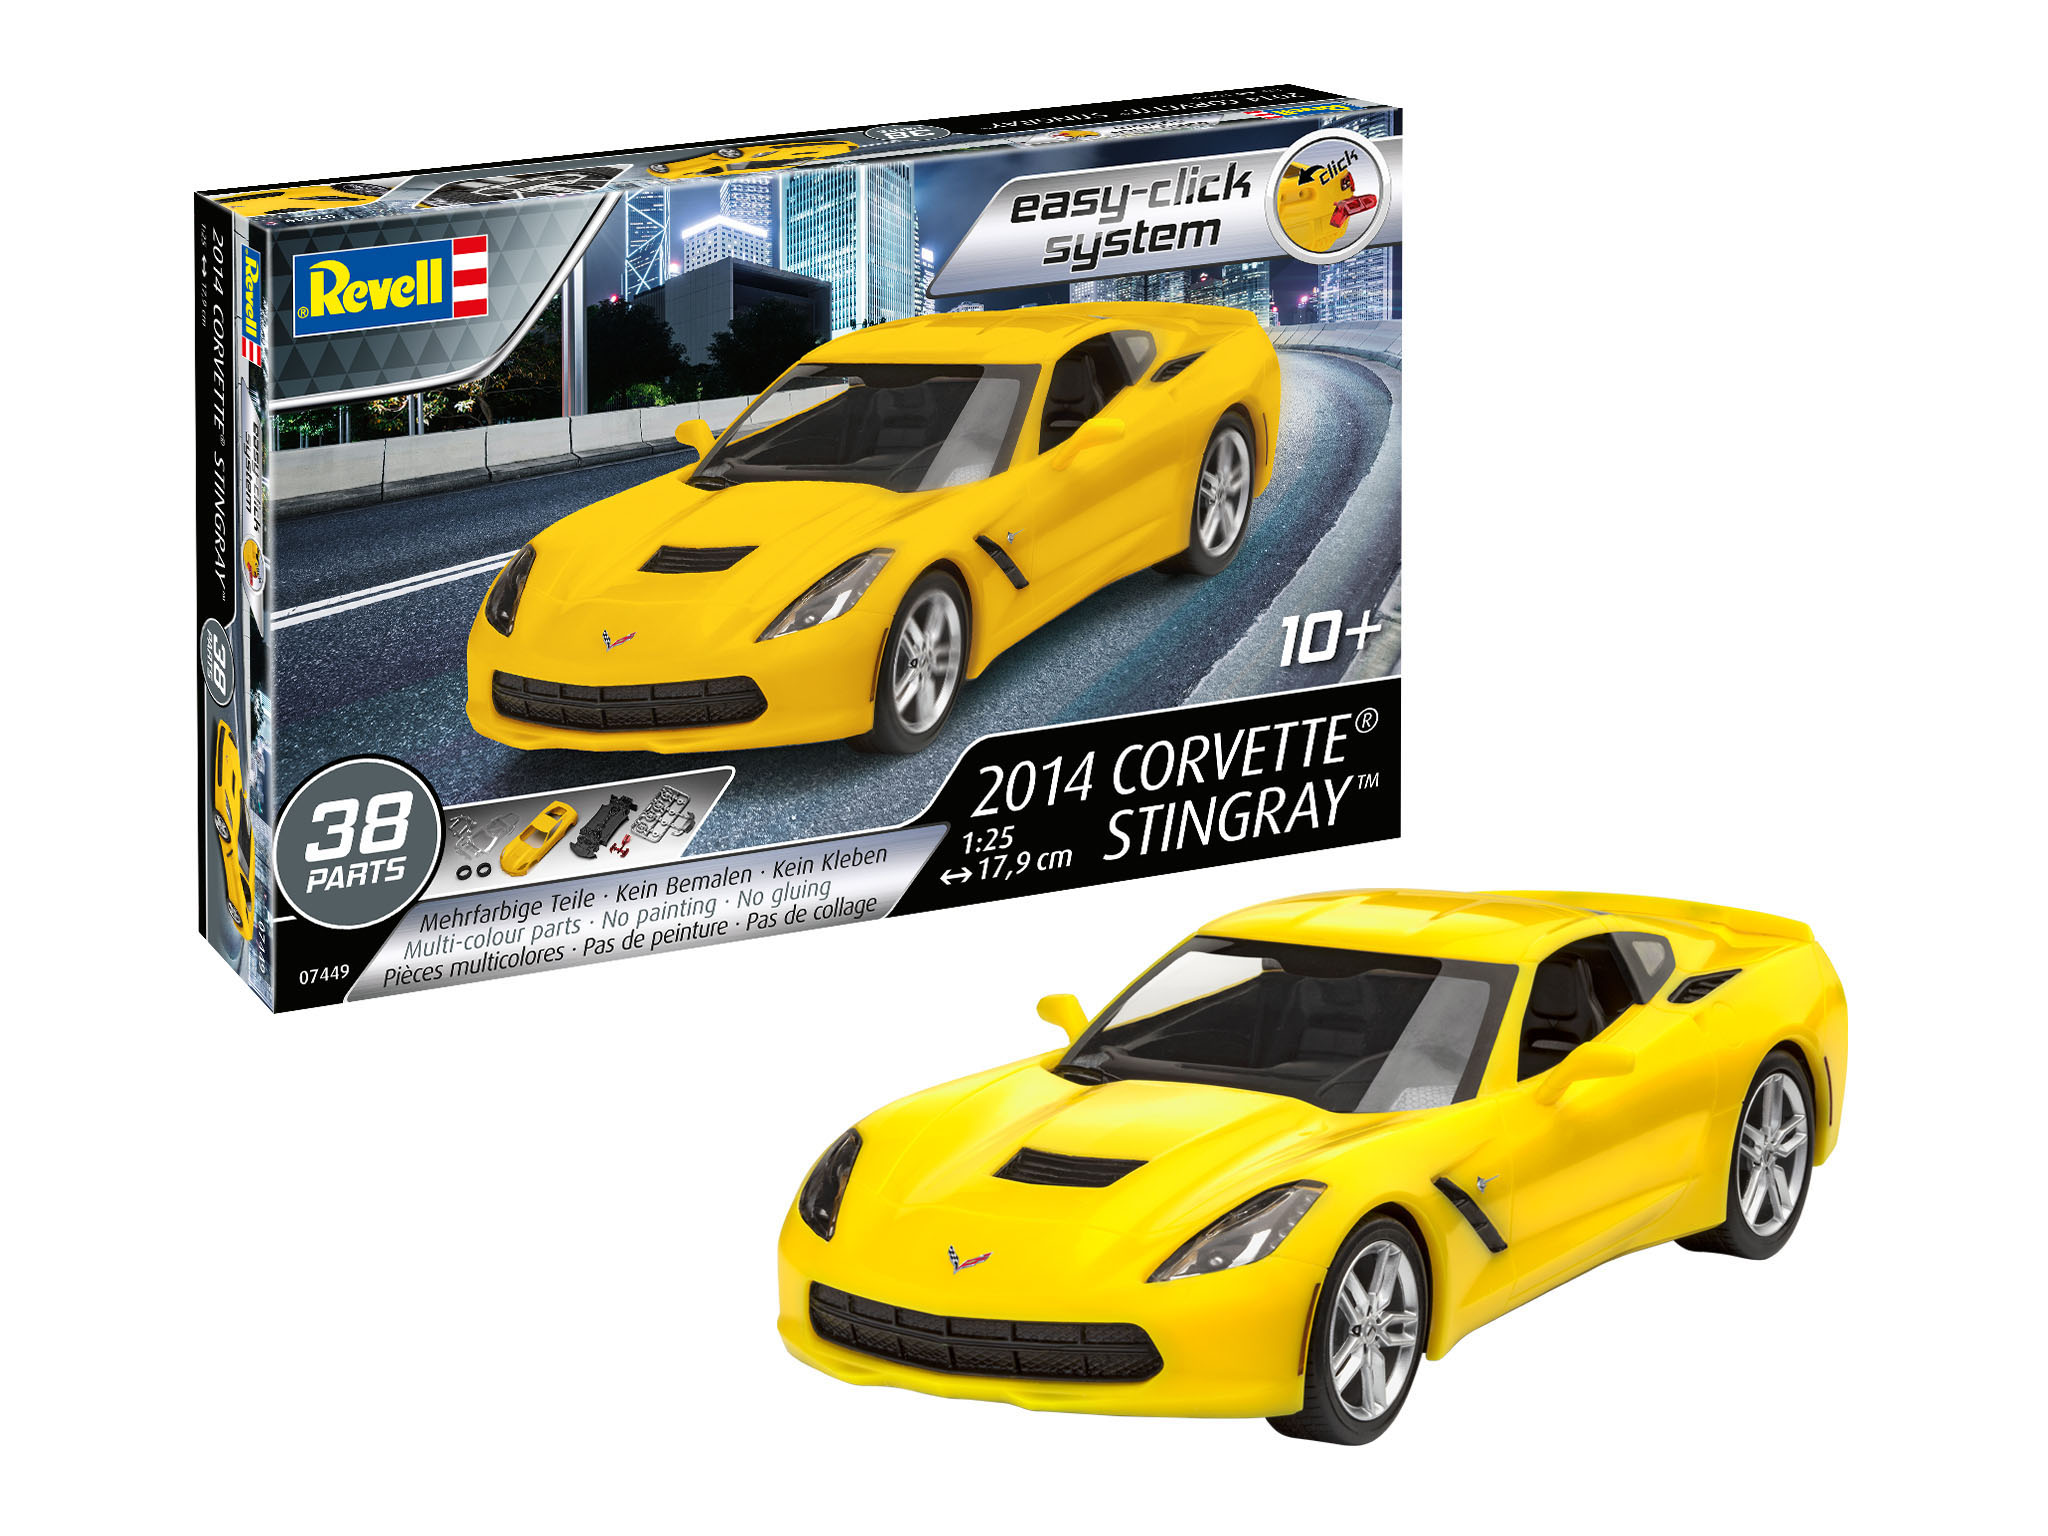 2014 Corvette Stingray (easy- - 07449